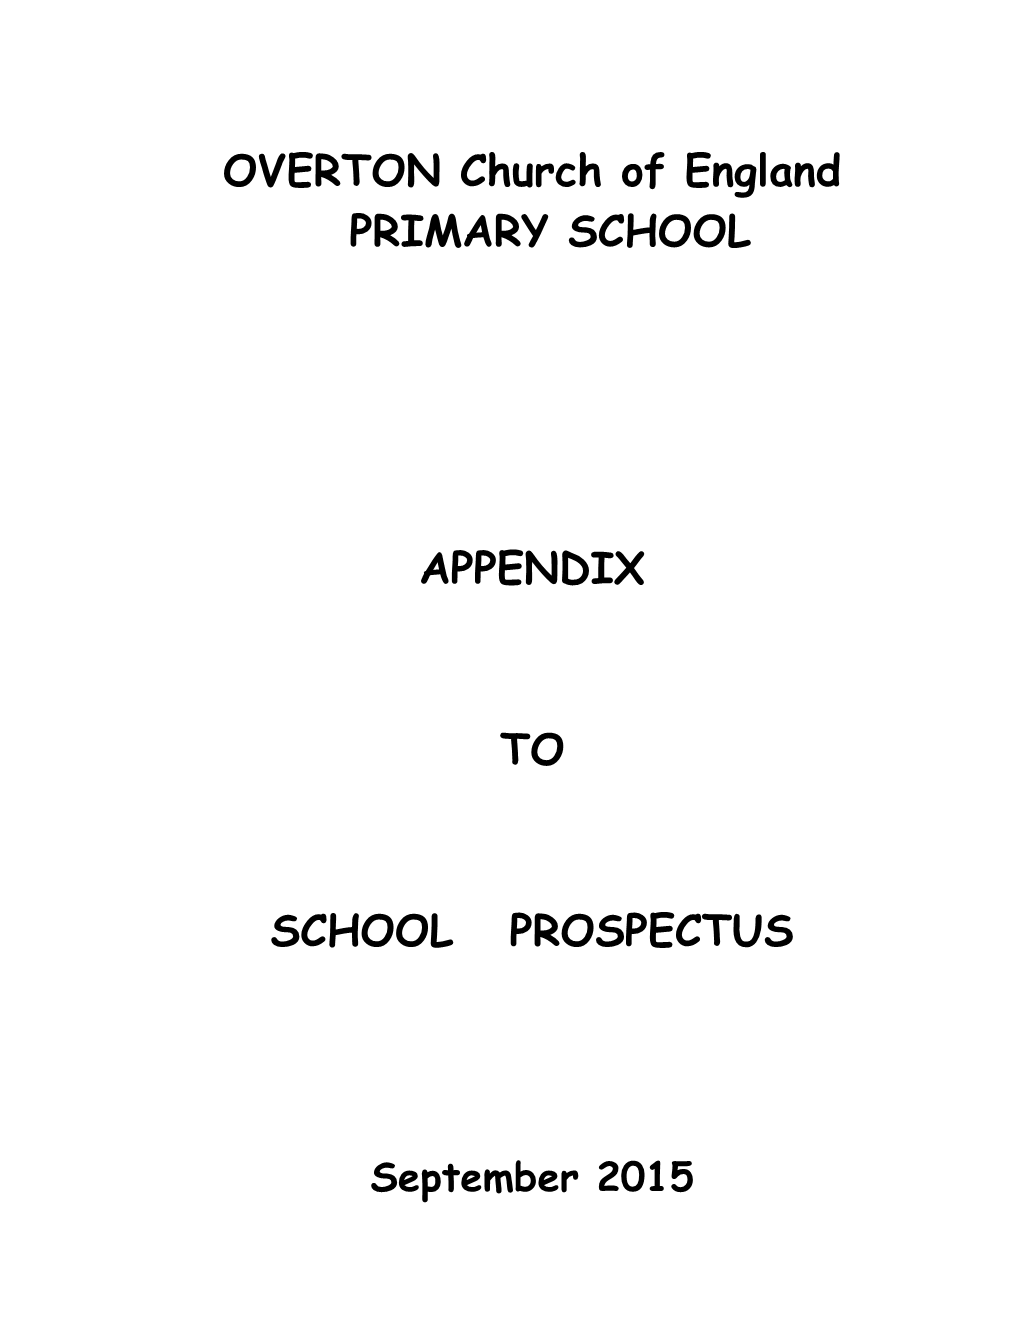 Overton Primary School